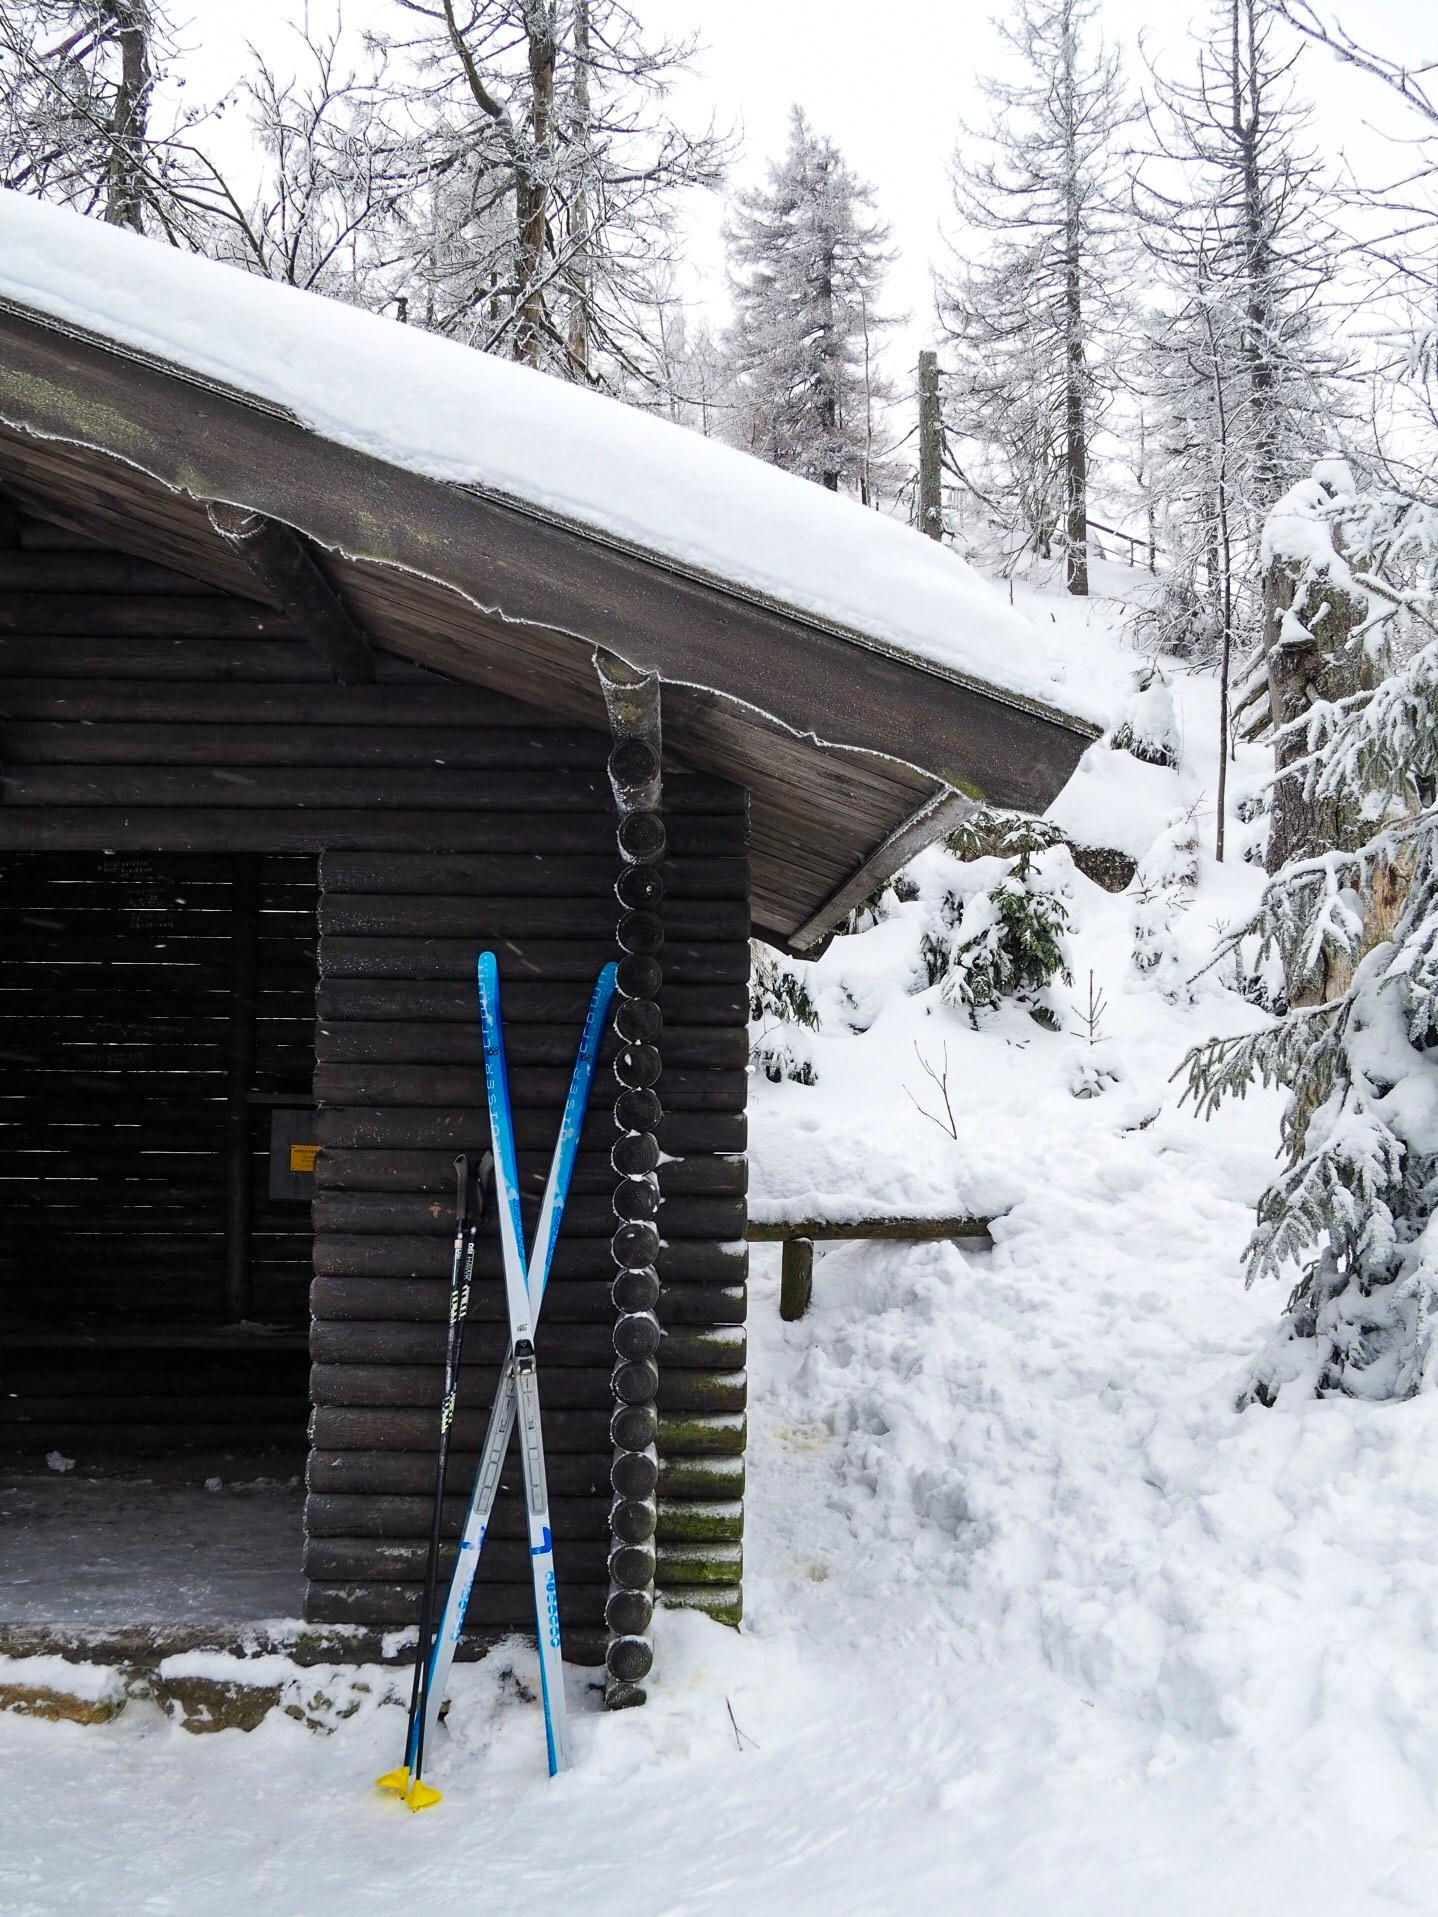 Hier bleib ich ⛷😍 #berghütte #schnee #winter #wintersport #skifahren #winterwonderland